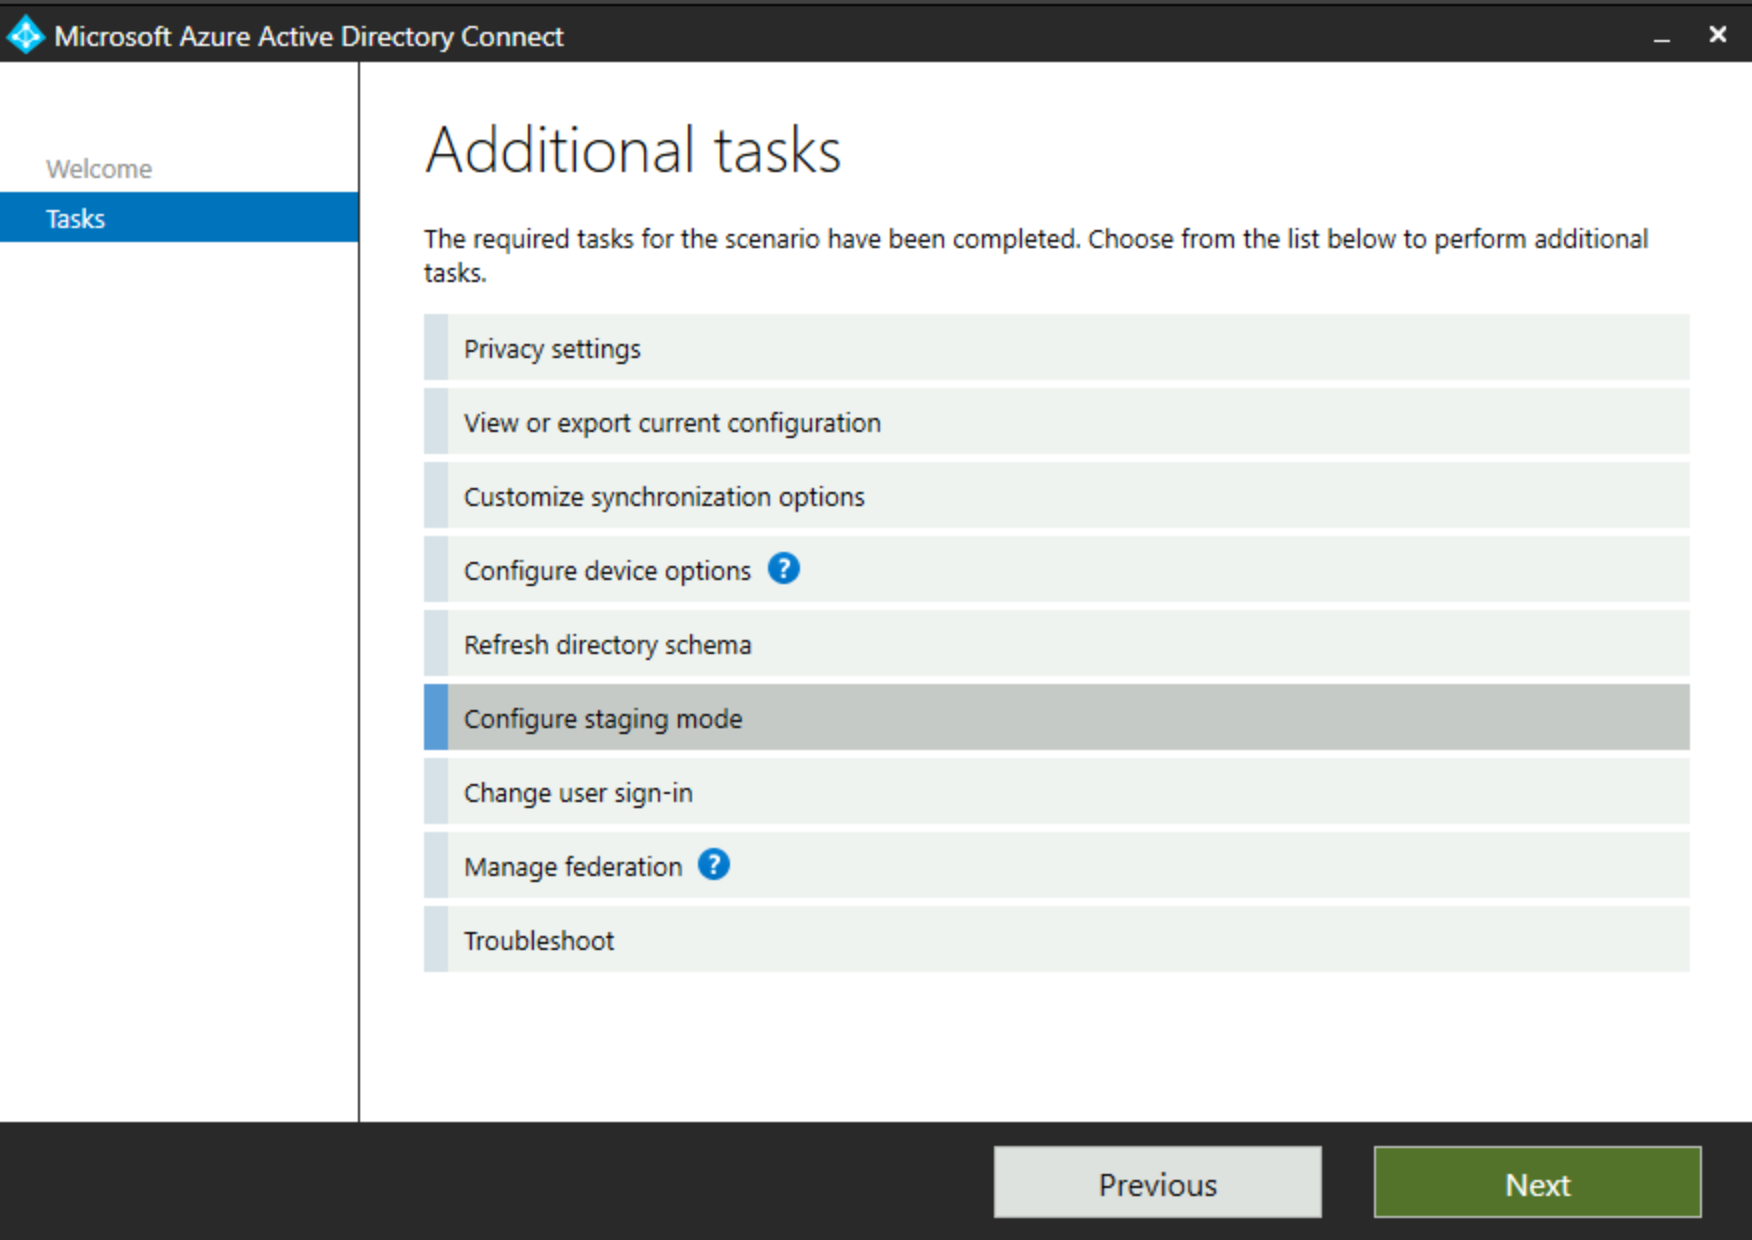 Etkin Microsoft Entra Bağlan iletişim kutusunda Hazırlama Modu'nu gösteren ekran görüntüsü.